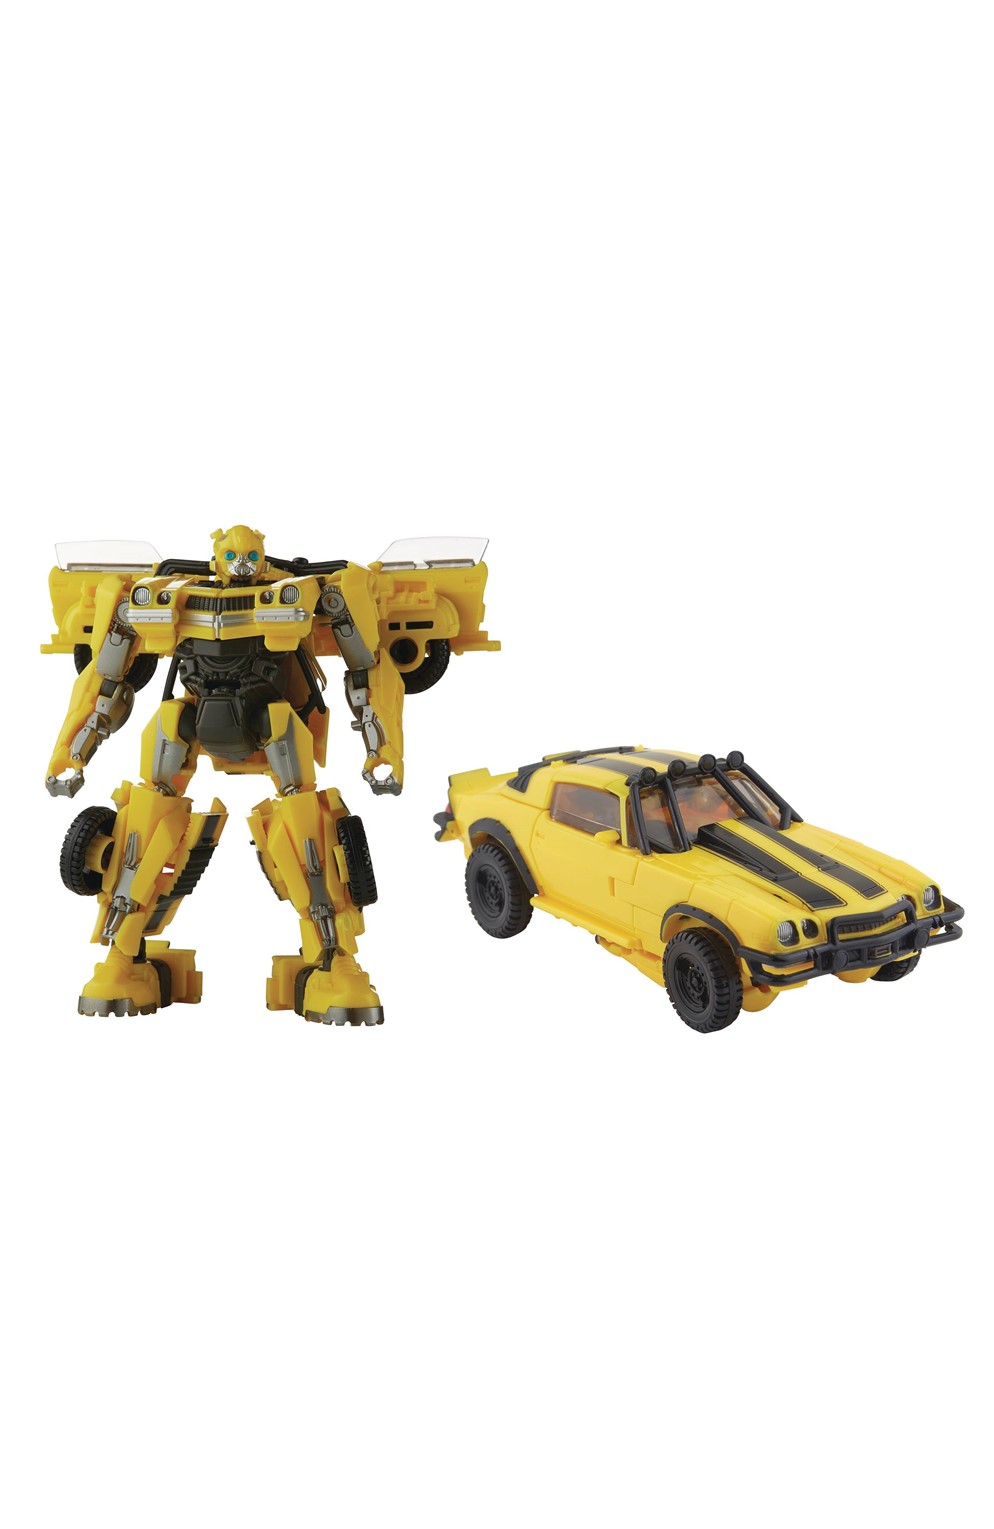 Transformers Studio Series #100 Bumblebee Deluxe Action Figure